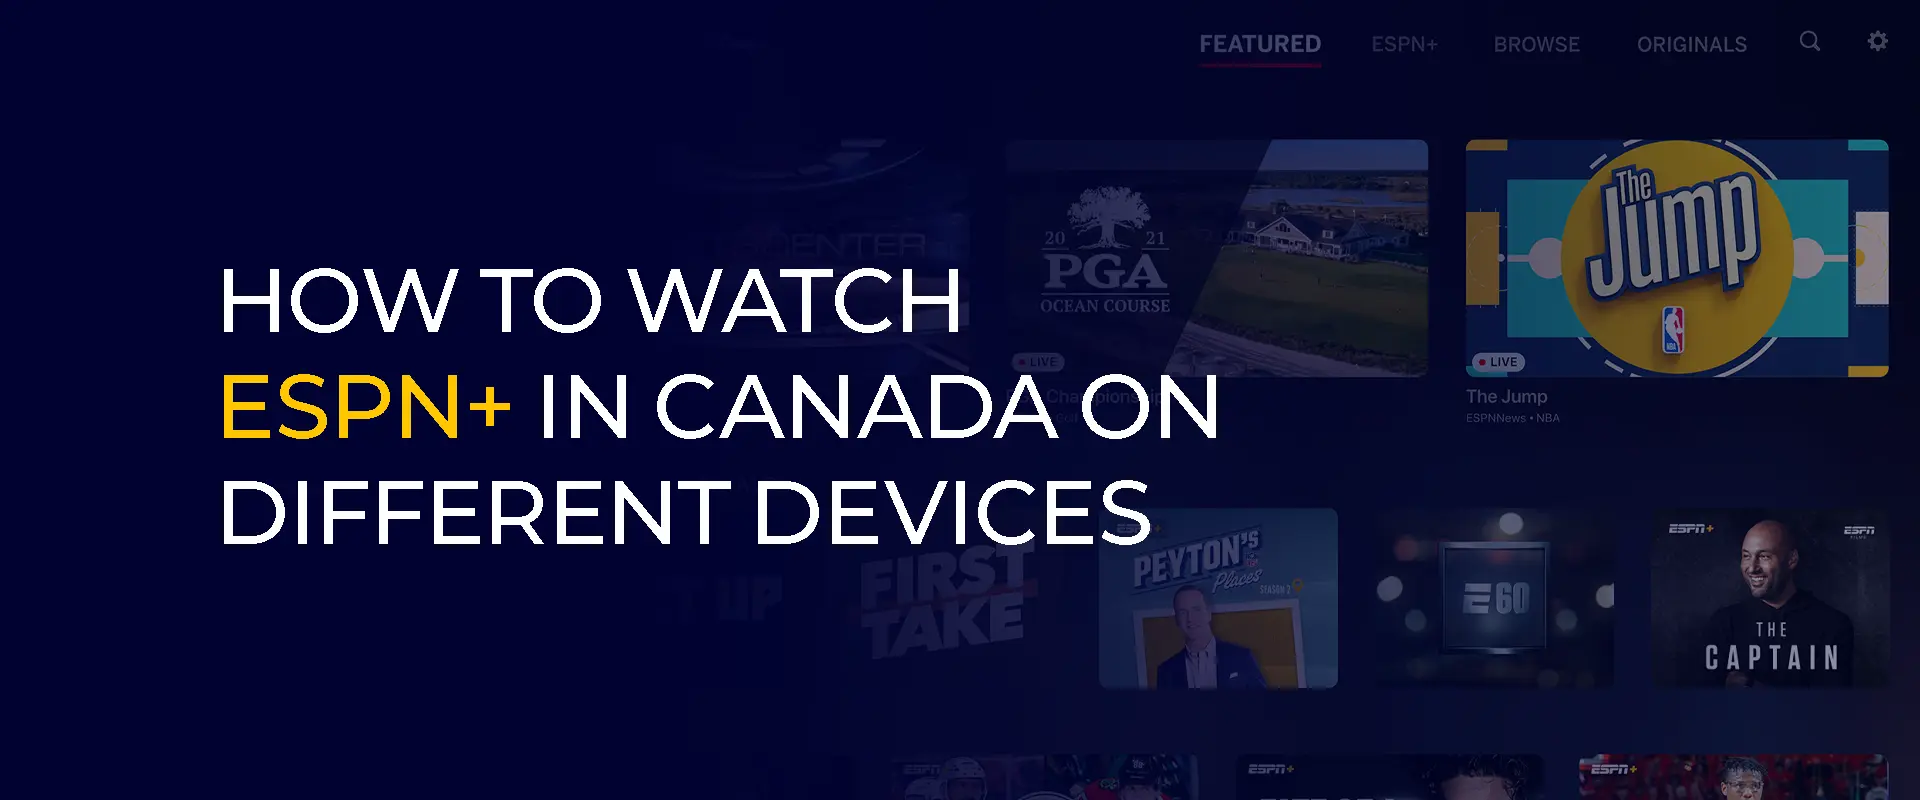 Как смотреть ESPN+ в Канаде на разных устройствах